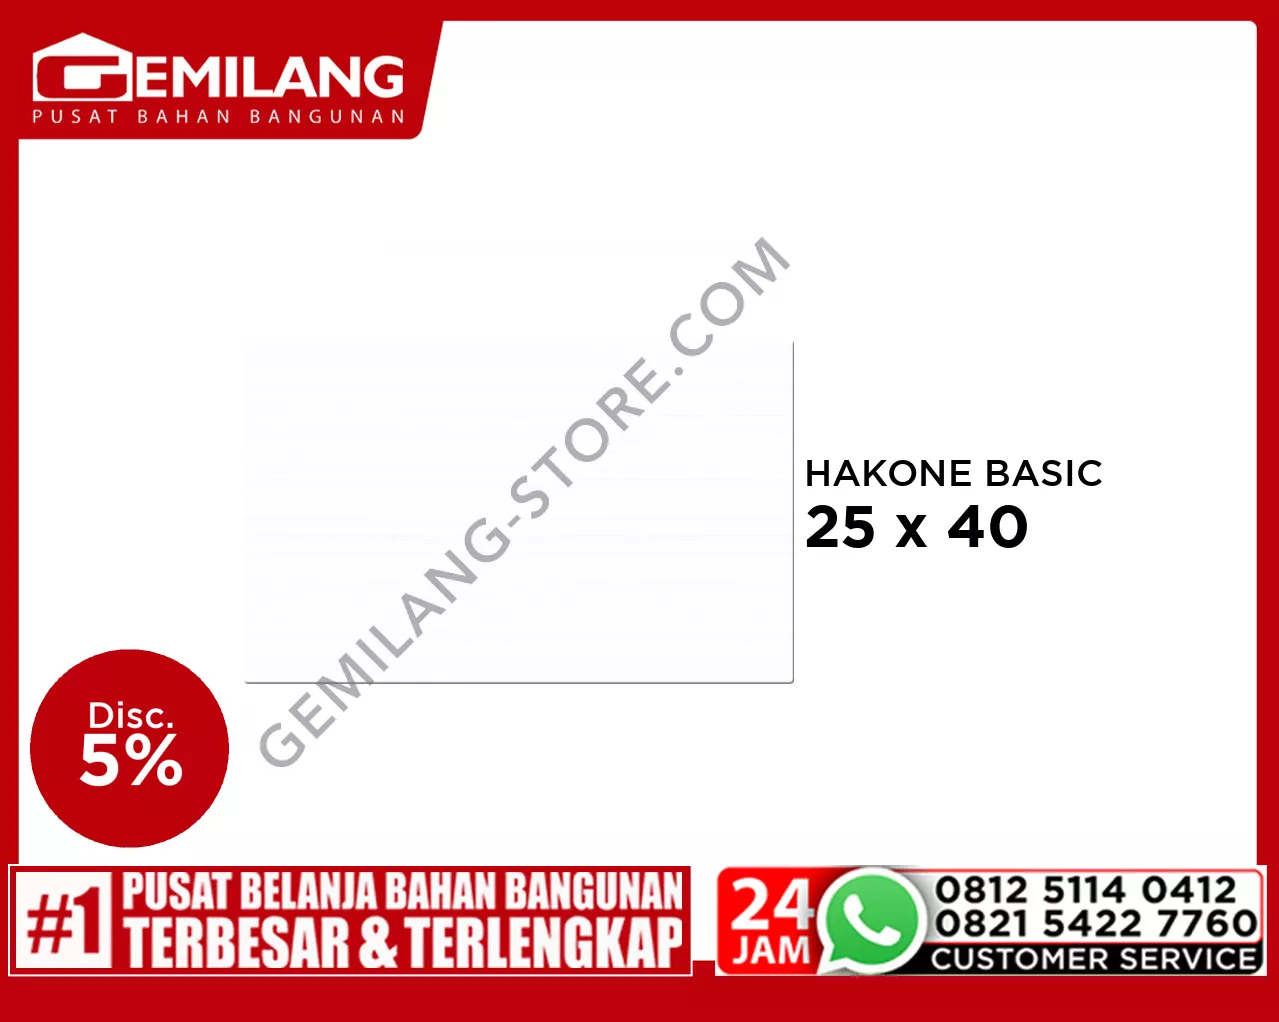 PLATINUM HAKONE BASIC 25 x 40